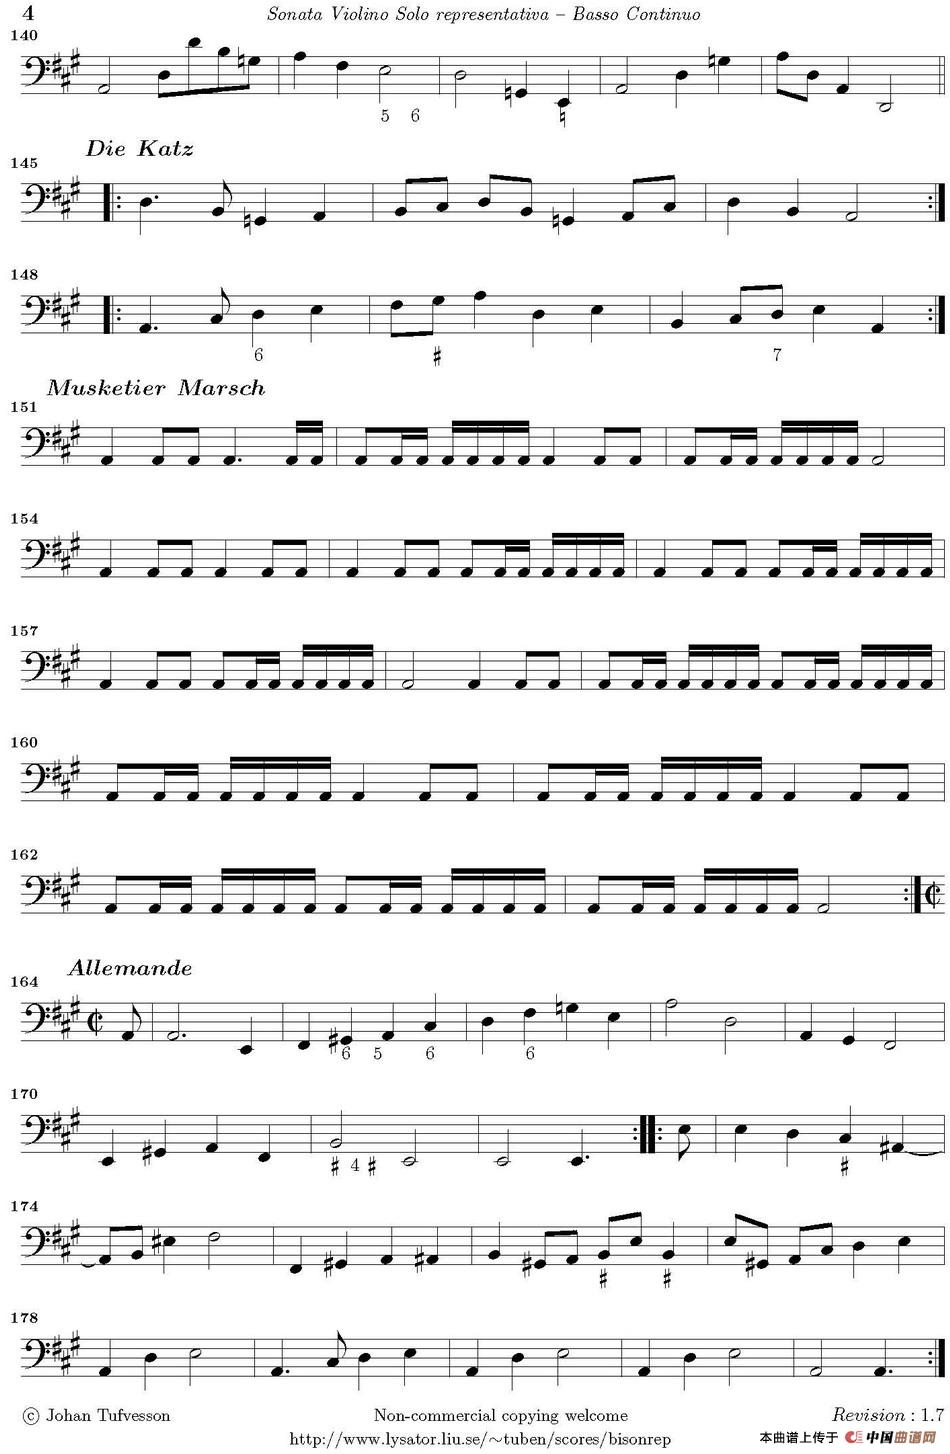 Sonata Violino Solo representativa（Basso Continuo）